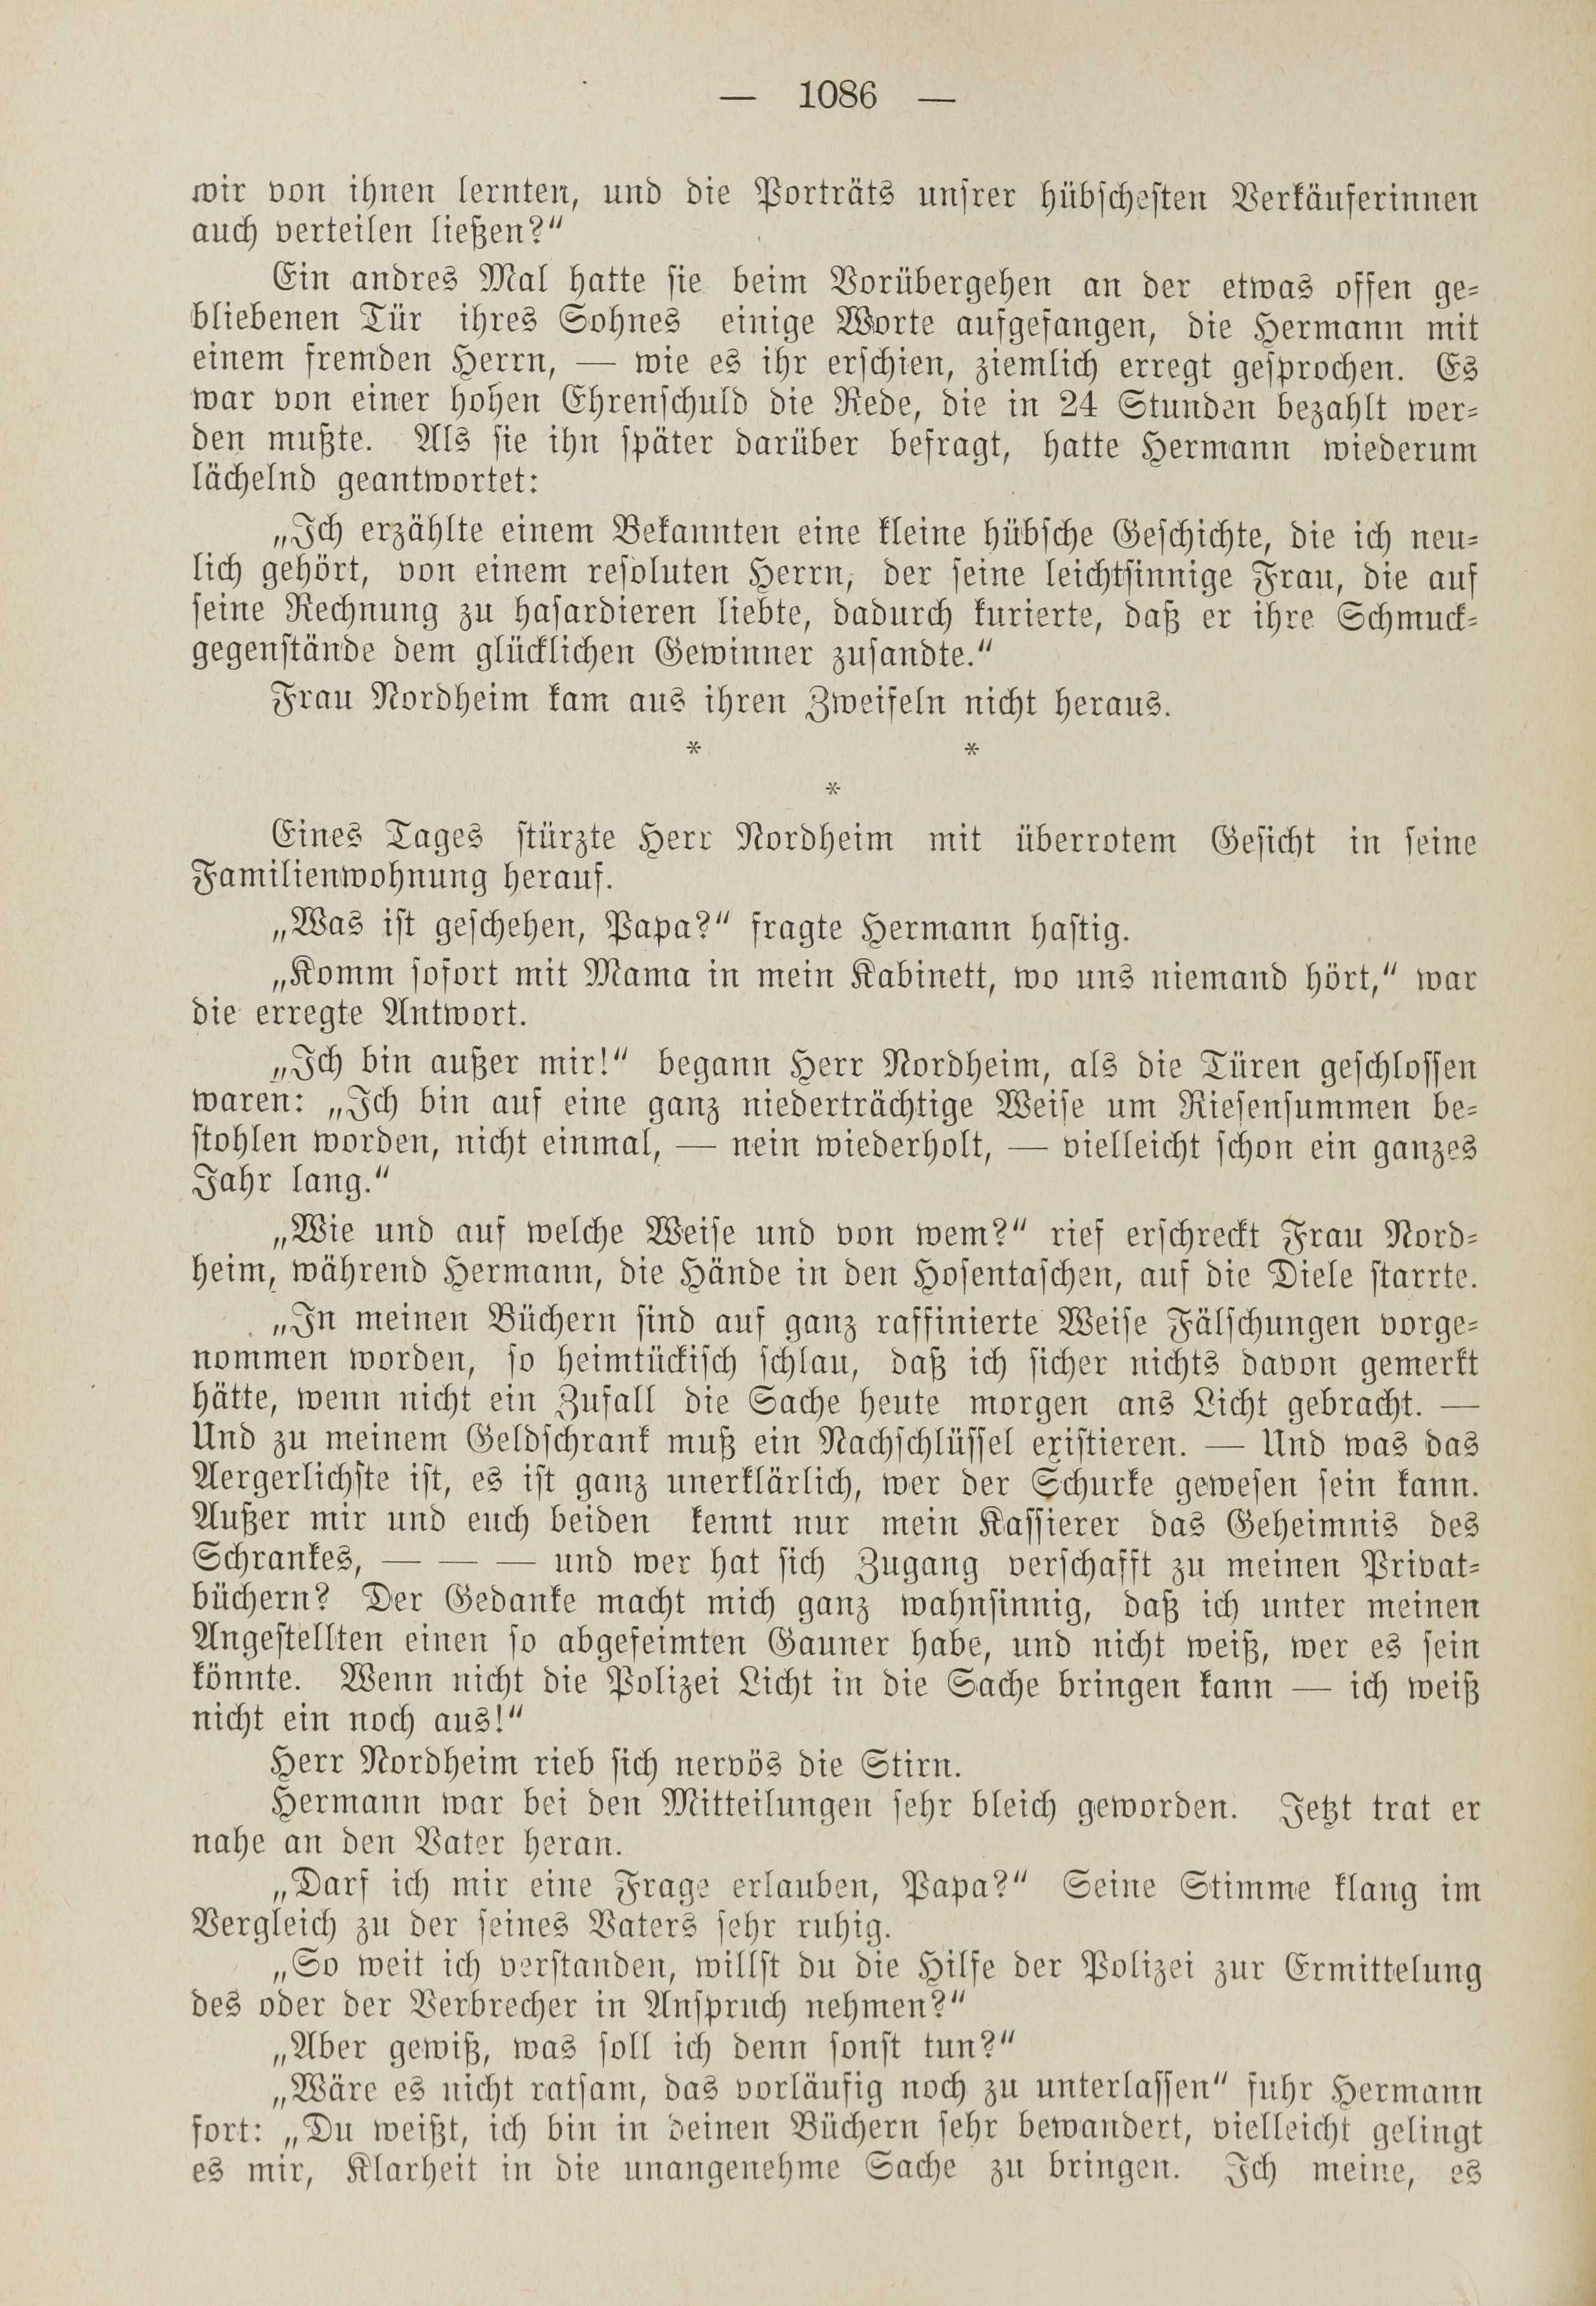 Deutsche Monatsschrift für Russland [1] (1912) | 1094. (1086) Main body of text